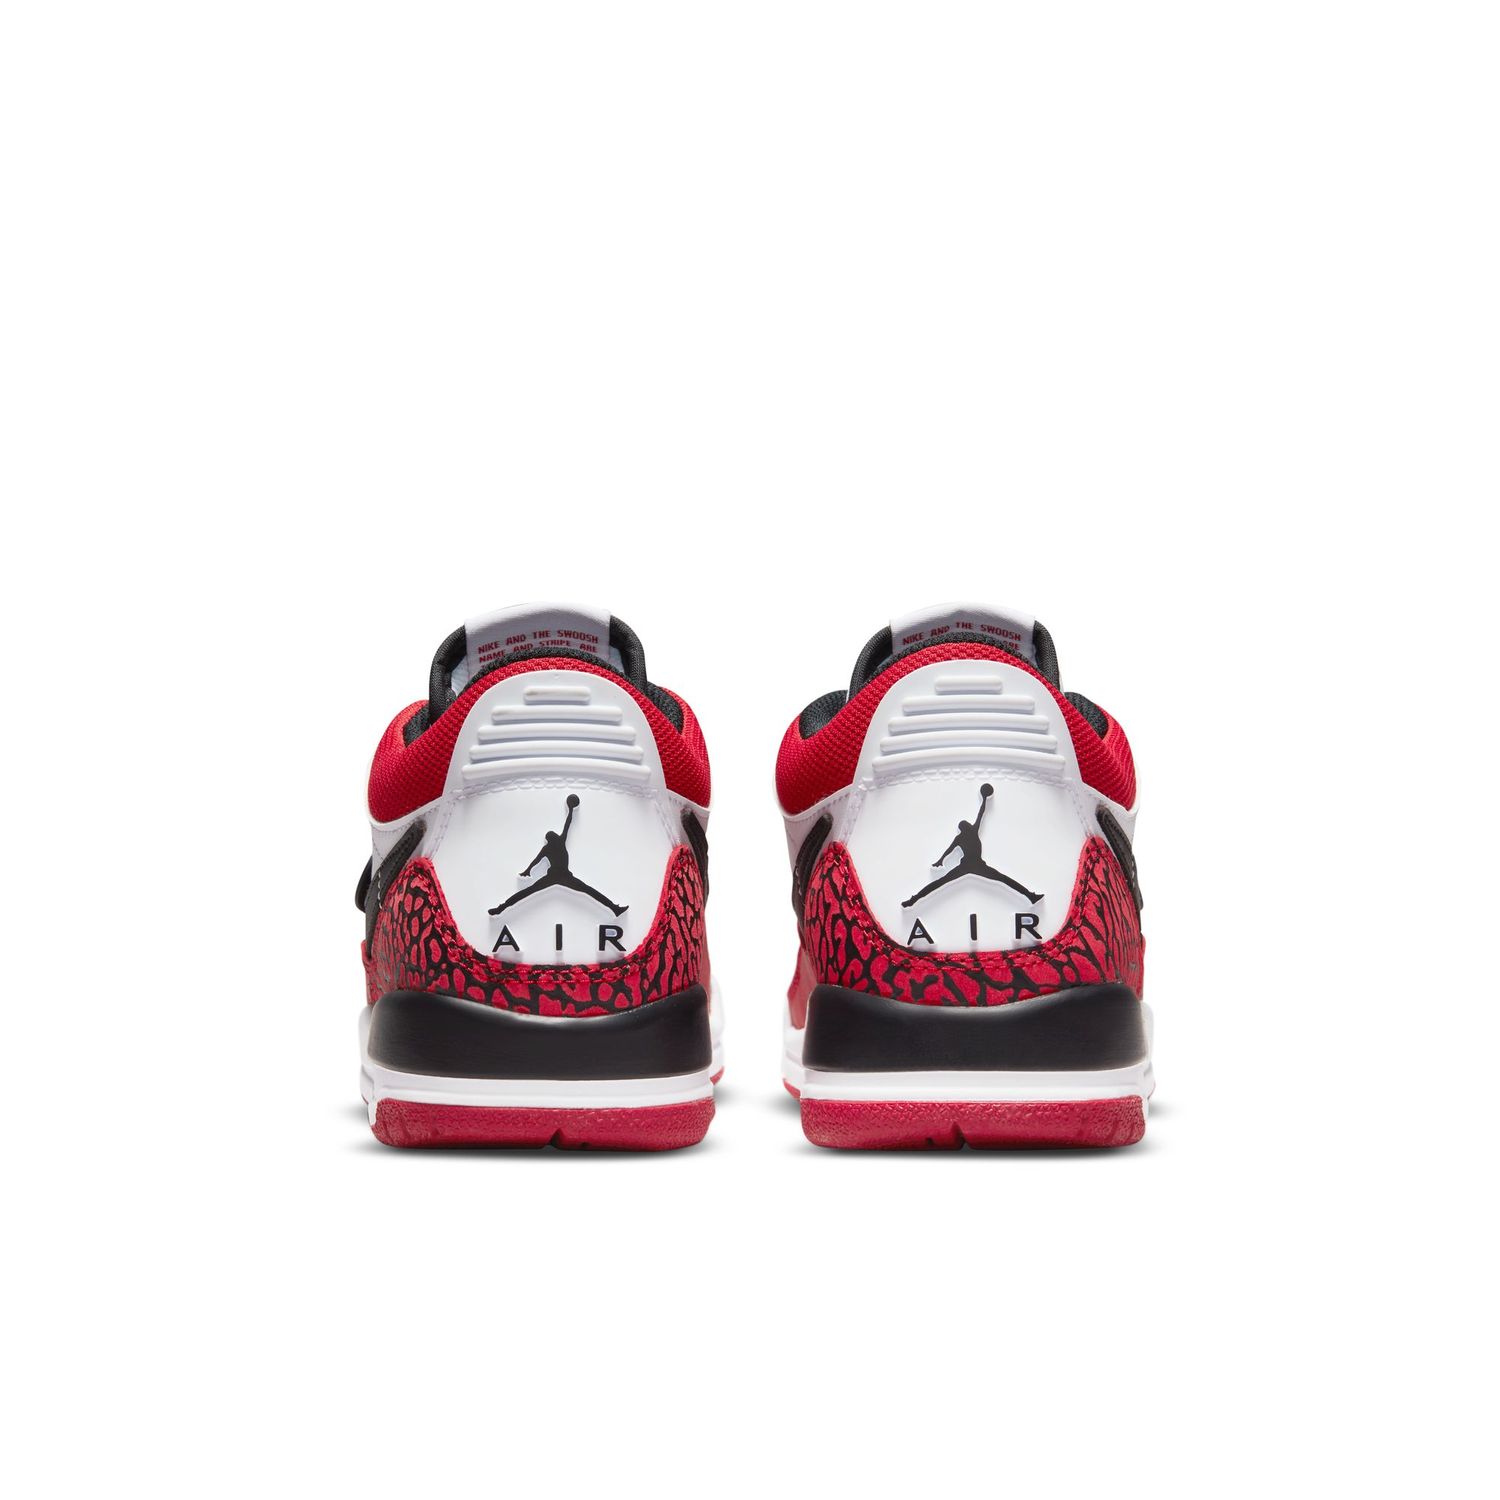 Air Jordan Legacy 312 Low Kinder Sneaker